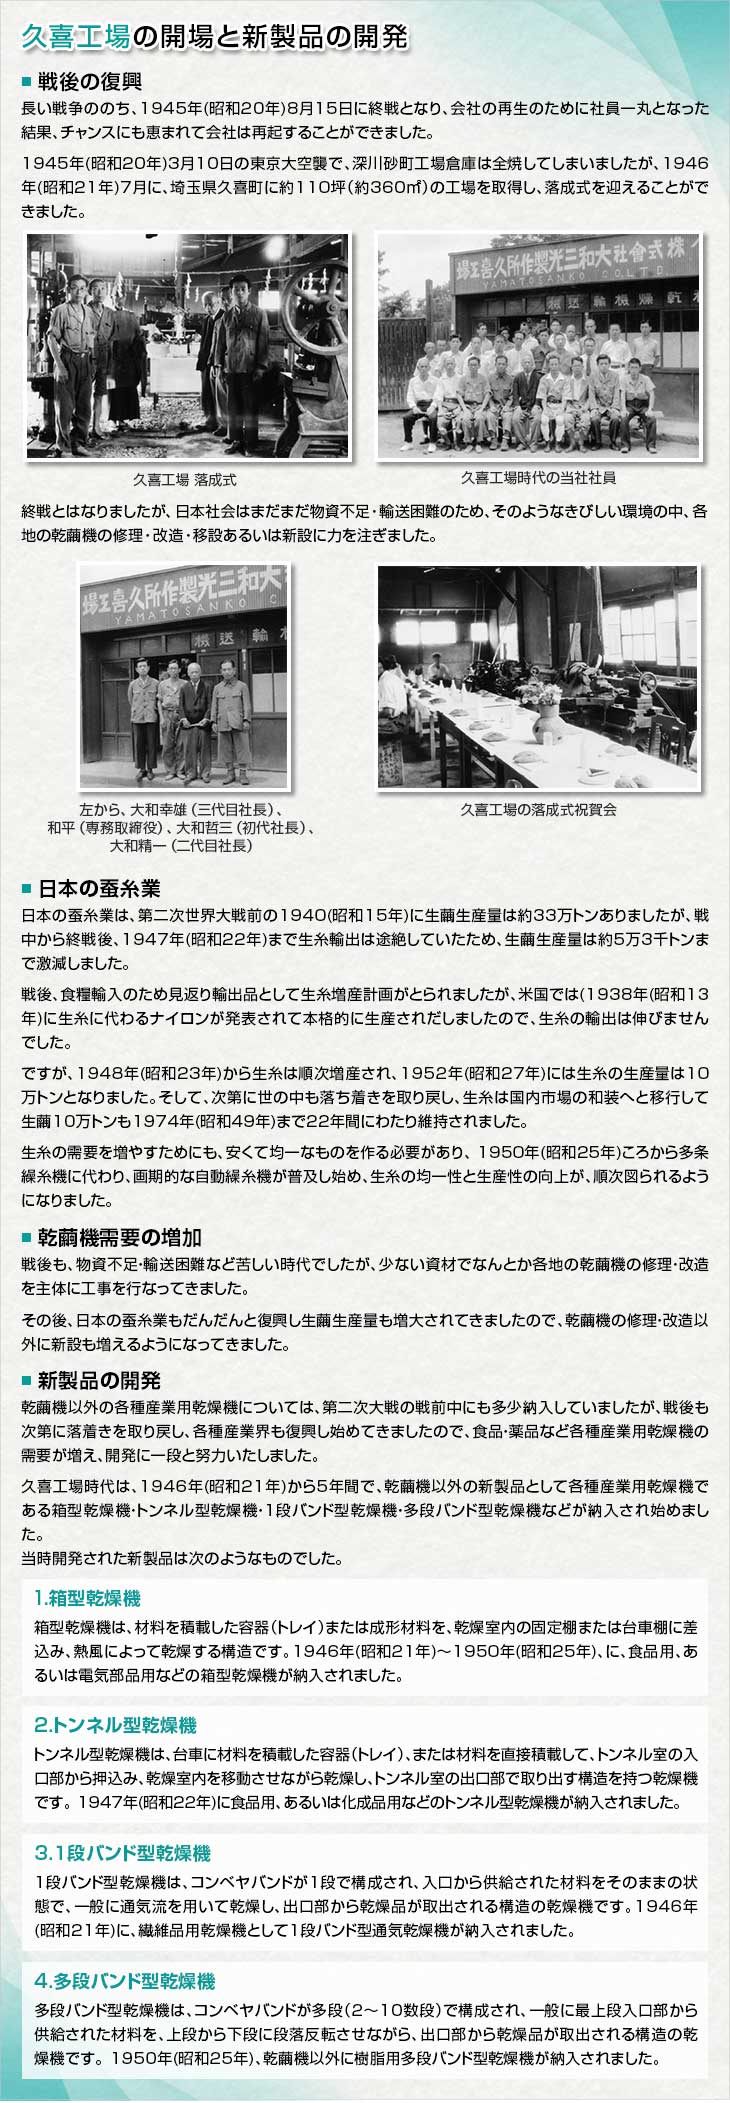 久喜工場の開場と新製品の開発。＜戦後の復興＞長い戦争ののち、1945年(昭和20年)8月15日に終戦となり、会社の再生のために社員一丸となった結果、チャンスにも恵まれて会社は再起することができました。1945年(昭和20年)3月10日の東京大空襲で、深川砂町工場倉庫は全焼してしまいましたが、1946年(昭和21年)7月に、埼玉県久喜町に約110坪（約360㎡）の工場を取得し、落成式を迎えることができました。久喜工場 落成式。久喜工場時代の当社社員。終戦とはなりましたが、日本社会はまだまだ物資不足・輸送困難のため、そのようなきびしい環境の中、各地の乾繭機の修理・改造・移設あるいは新設に力を注ぎました。左から、大和幸雄（三代目社長）、和平（専務取締役）、大和哲三（初代社長）、大和精一（二代目社長）。久喜工場の落成式祝賀会。＜日本の蚕糸業＞日本の蚕糸業は、第二次世界大戦前の1940(昭和15年)に生繭生産量は約33万トンありましたが、戦中から終戦後、1947年(昭和22年)まで生糸輸出は途絶していたため、生繭生産量は約5万3千トンまで激減しました。戦後、食糧輸入のため見返り輸出品として生糸増産計画がとられましたが、米国では(1938年(昭和13年)に生糸に代わるナイロンが発表されて本格的に生産されだしましたので、生糸の輸出は伸びませんでした。ですが、1948年(昭和23年)から生糸は順次増産され、 1952年(昭和27年)には生糸の生産量は10万トンとなりました。そして、次第に世の中も落ち着きを取り戻し、生糸は国内市場の和装へと移行して生繭10万トンも1974年(昭和49年)まで22年間にわたり維持されました。生糸の需要を増やすためにも、安くて均一なものを作る必要があり、 1950年(昭和25年)ころから多条繰糸機に代わり、画期的な自動繰糸機が普及し始め、生糸の均一性と生産性の向上が、順次図られるようになりました。＜乾繭機需要の増加＞戦後も、物資不足・輸送困難など苦しい時代でしたが、少ない資材でなんとか各地の乾繭機の修理・改造を主体に工事を行なってきました。その後、日本の蚕糸業もだんだんと復興し生繭生産量も増大されてきましたので、乾繭機の修理・改造以外に新設も増えるようになってきました。＜新製品の開発＞乾繭機以外の各種産業用乾燥機については、第二次大戦の戦前中にも多少納入していましたが、戦後も次第に落着きを取り戻し、各種産業界も復興し始めてきましたので、食品・薬品など各種産業用乾燥機の需要が増え、開発に一段と努力いたしました。久喜工場時代は、1946年(昭和21年)から5年間で、乾繭機以外の新製品として各種産業用乾燥機である箱型乾燥機・トンネル型乾燥機・１段バンド型乾燥機・多段バンド型乾燥機などが納入され始めました。当時開発された新製品は次のようなものでした。１）箱型乾燥機。箱型乾燥機は、材料を積載した容器（トレイ）または成形材料を、乾燥室内の固定棚または台車棚に差込み、熱風によって乾燥する構造です。 1946年(昭和21年)～ 1950年(昭和25年)、に、食品用、あるいは電気部品用などの箱型乾燥機が納入されました。２）トンネル型乾燥機。トンネル型乾燥機は、台車に材料を積載した容器（トレイ）、または材料を直接積載して、トンネル室の入口部から押込み、乾燥室内を移動させながら乾燥し、トンネル室の出口部で取り出す構造を持つ乾燥機です。 1947年(昭和22年)に食品用、あるいは化成品用などのトンネル型乾燥機が納入されました。３）１段バンド型乾燥機。１段バンド型乾燥機は、コンベヤバンドが１段で構成され、入口から供給された材料をそのままの状態で、一般に通気流を用いて乾燥し、出口部から乾燥品が取出される構造の乾燥機です。 1946年(昭和21年)に、繊維品用乾燥機として１段バンド型通気乾燥機が納入されました。４）多段バンド型乾燥機。多段バンド型乾燥機は、コンベヤバンドが多段（2～10数段）で構成され、一般に最上段入口部から供給された材料を、上段から下段に段落反転させながら、出口部から乾燥品が取出される構造の乾燥機です。 1950年(昭和25年)、乾繭機以外に樹脂用多段バンド型乾燥機が納入されました。